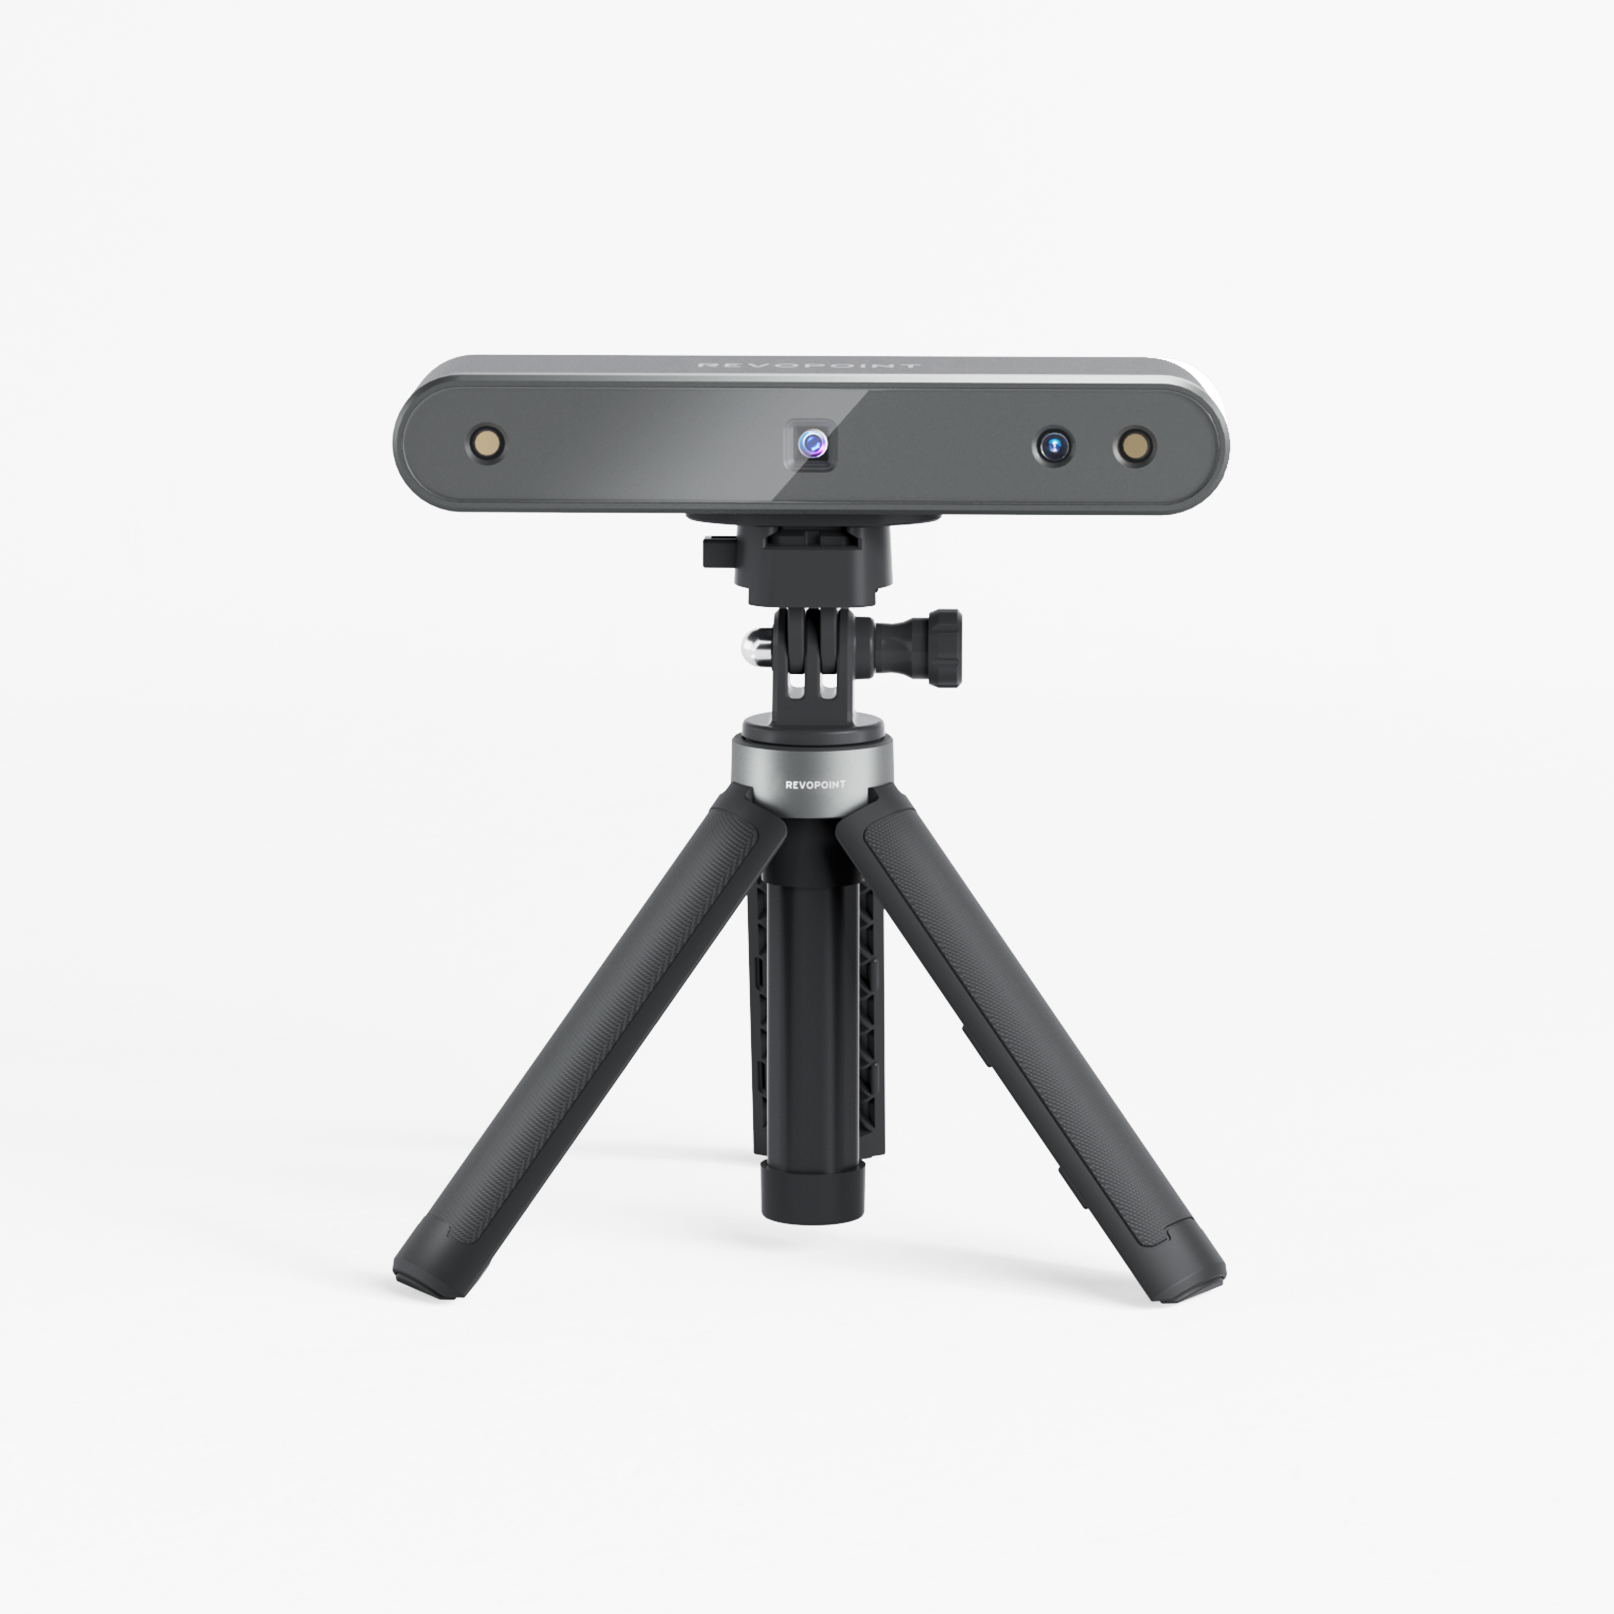 POP 2 3D Scanner（Infrared Light丨Precision 0.05mm）